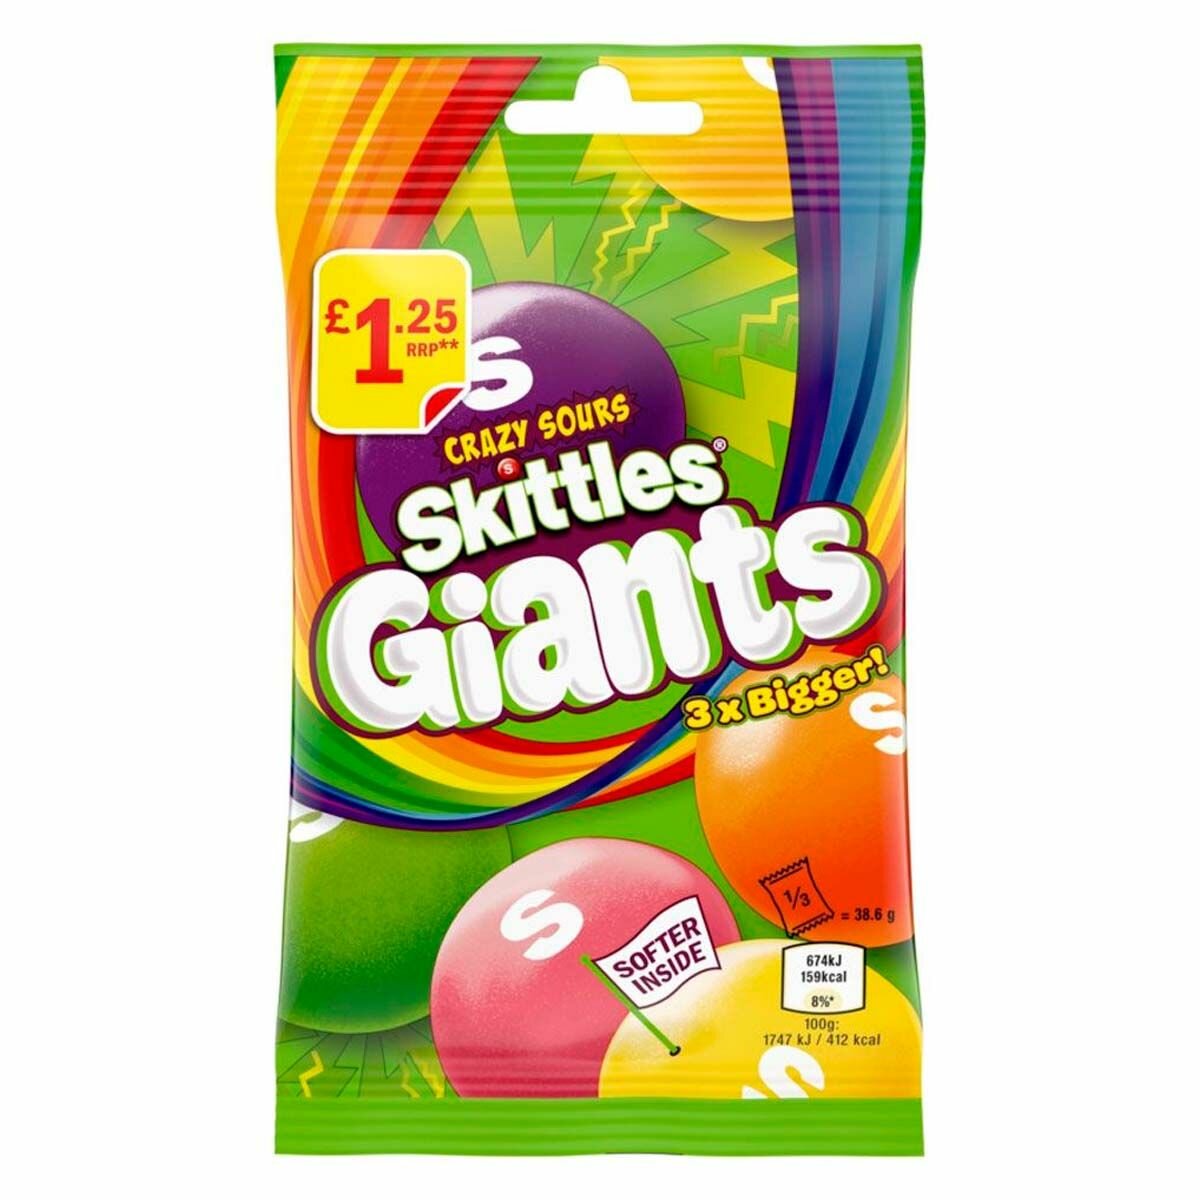 Кислые гигантские драже Skittles Giants Crazy Sours (Ирландия), 116 г - фотография № 1